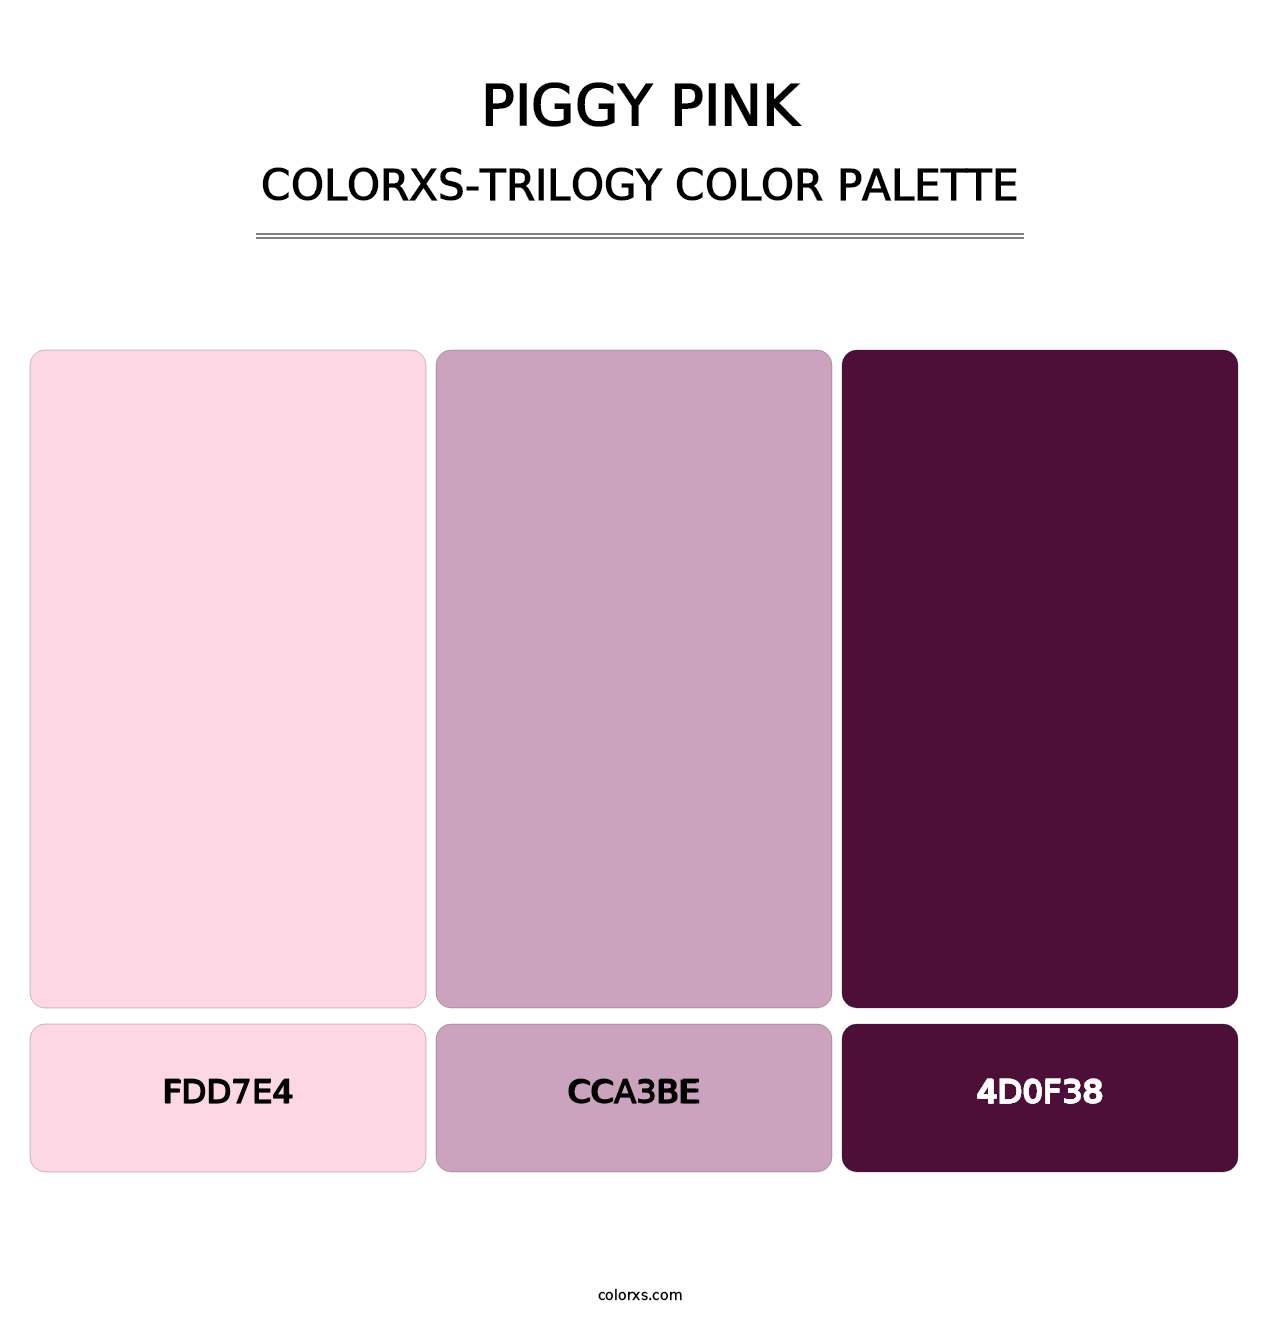 Piggy Pink - Colorxs Trilogy Palette